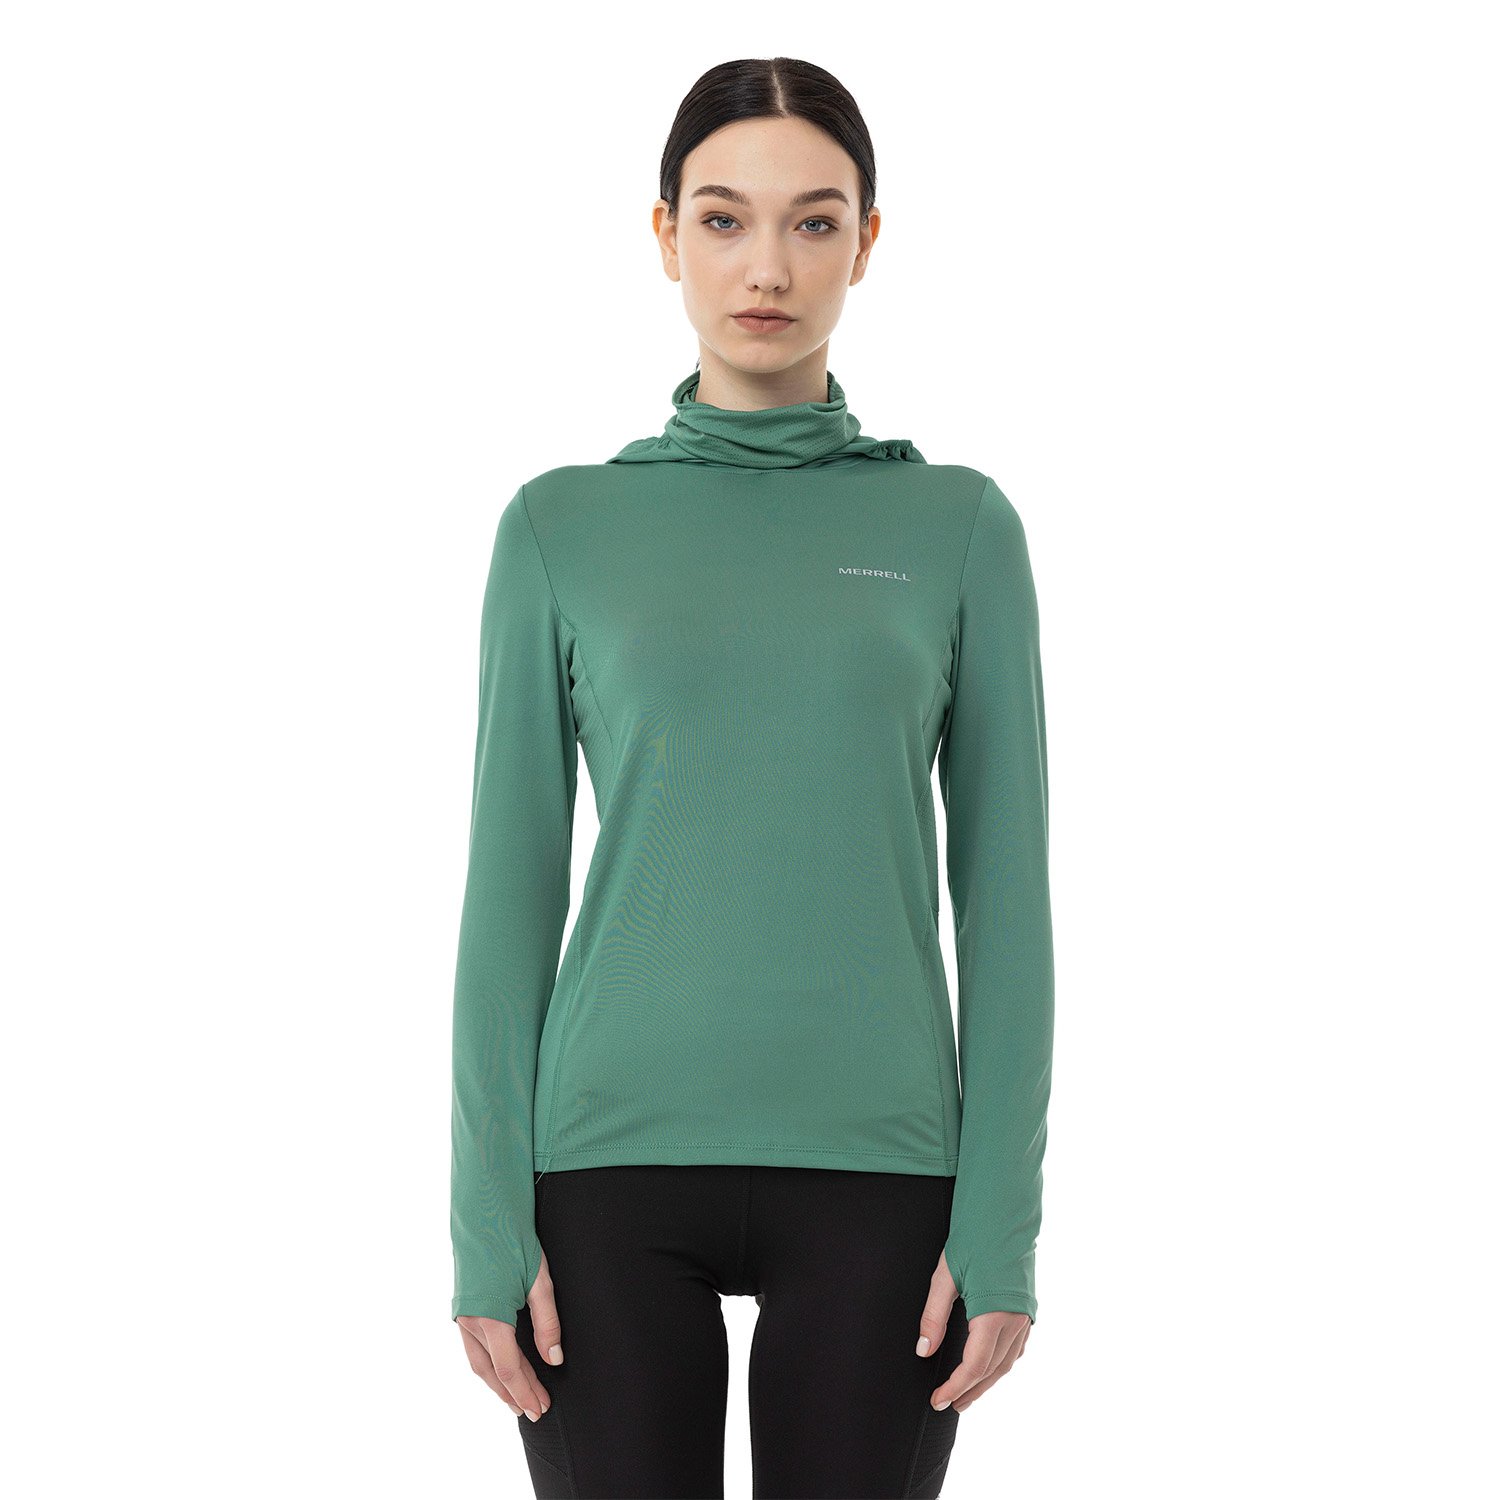 Merrell Total Kadın Sweatshirt - Yeşil - 1